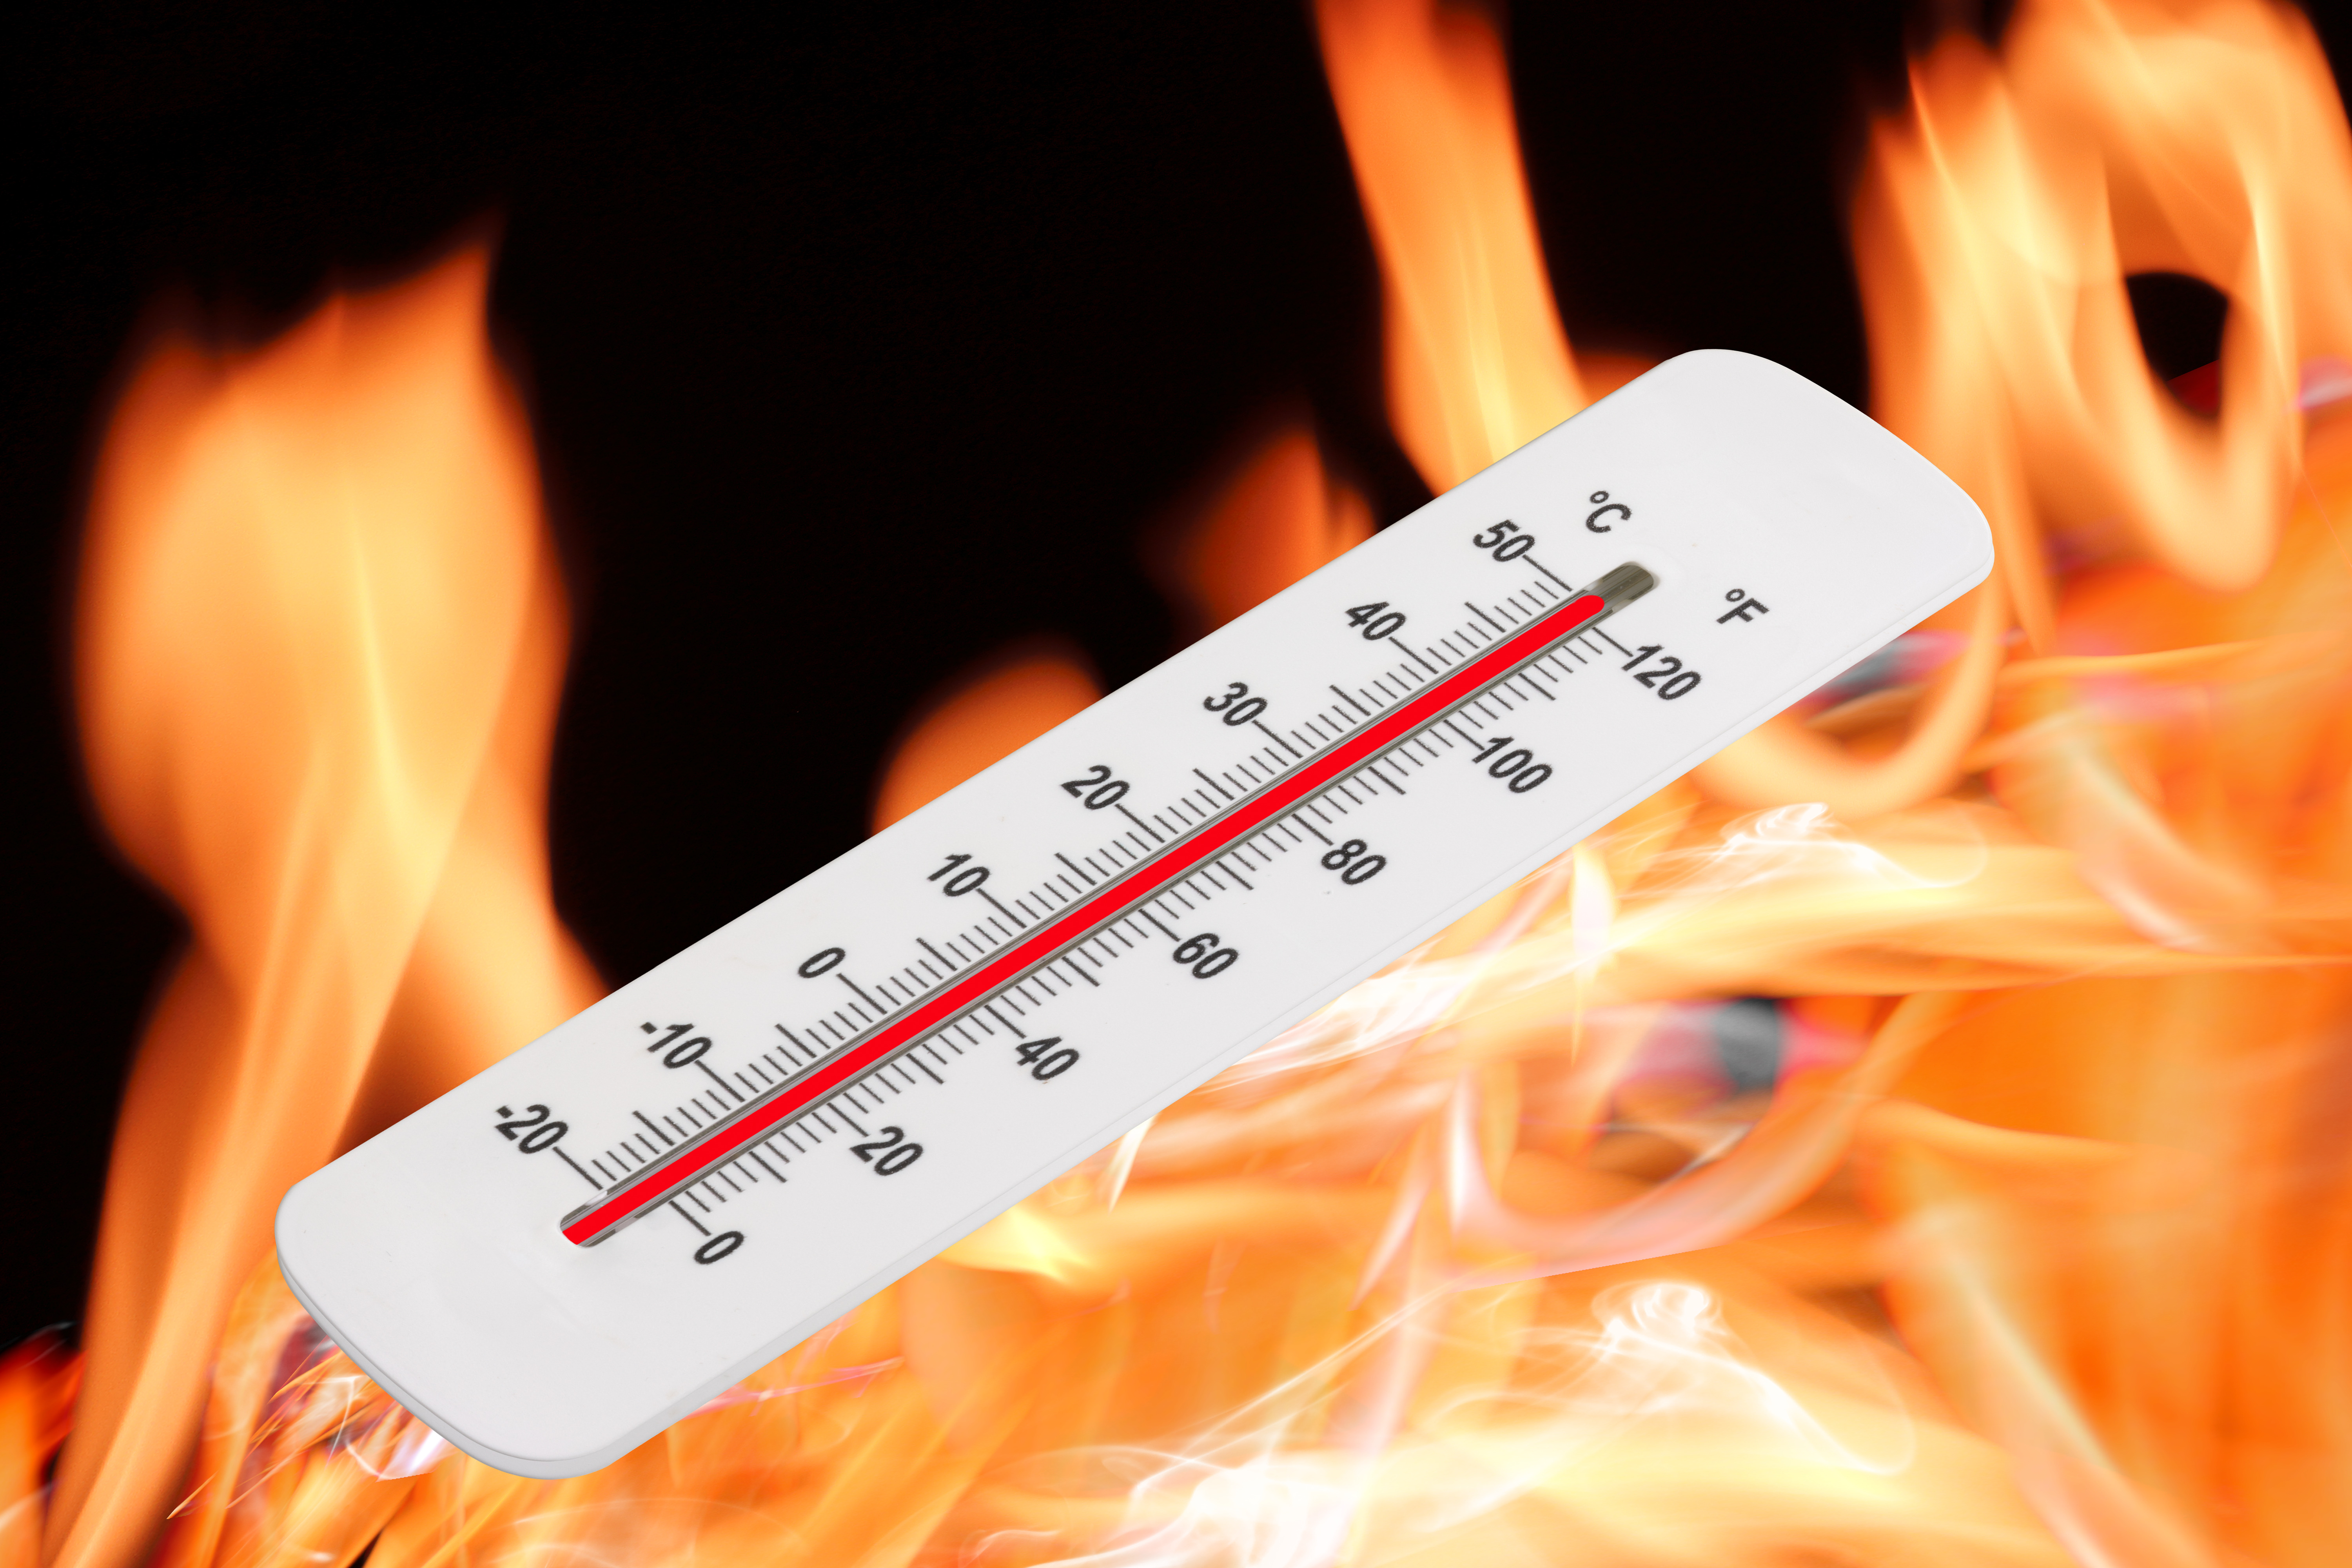 Le réglage du thermostat peut également aider à maximiser l'orgasme